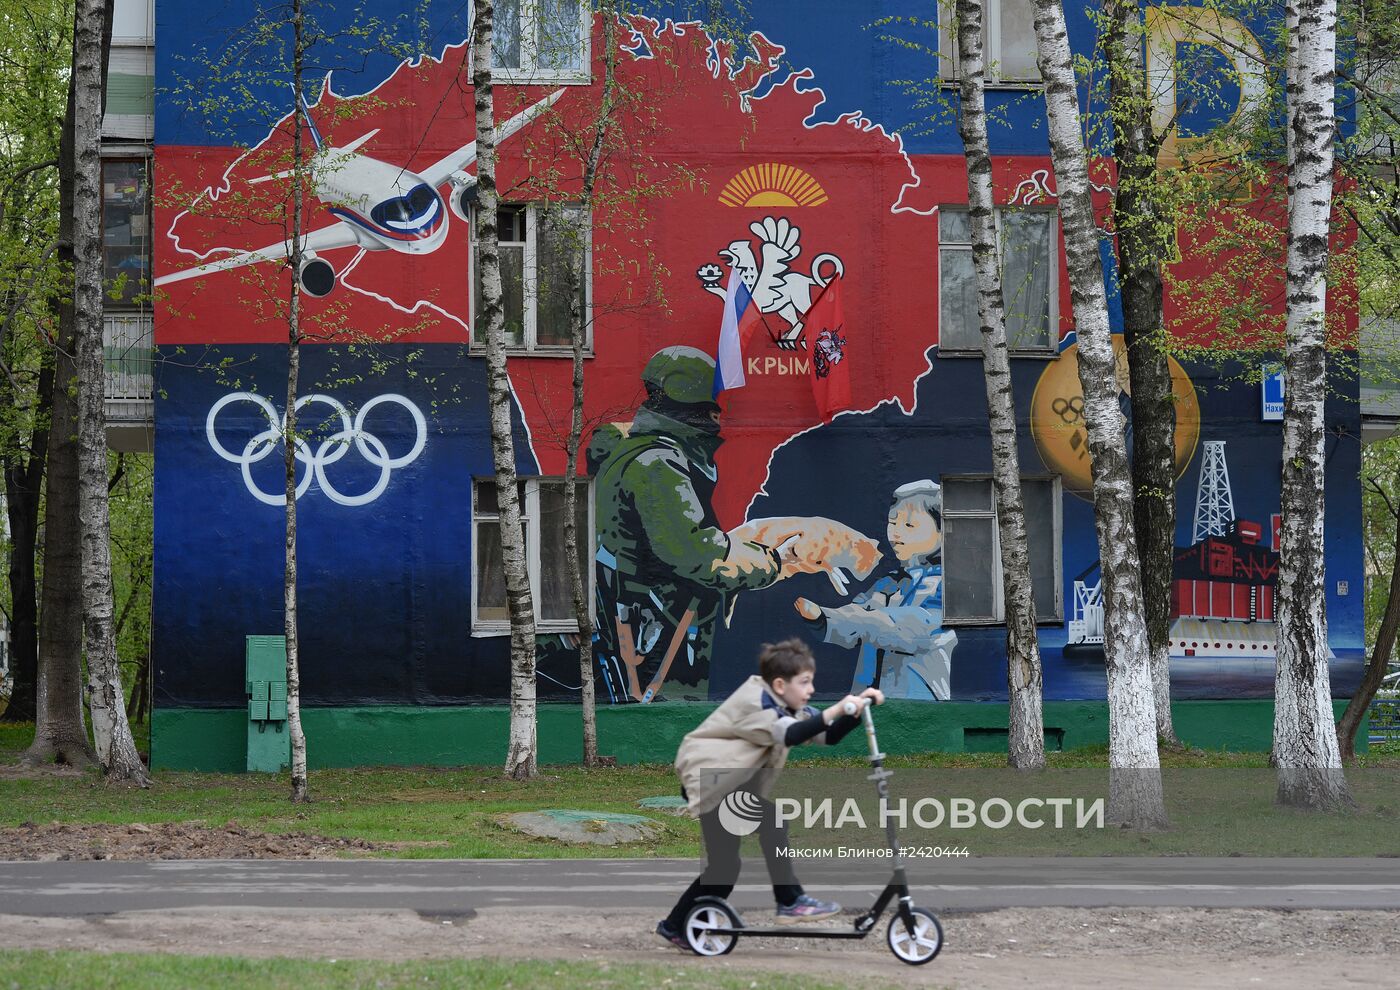 Патриотическое граффити на улице Москвы